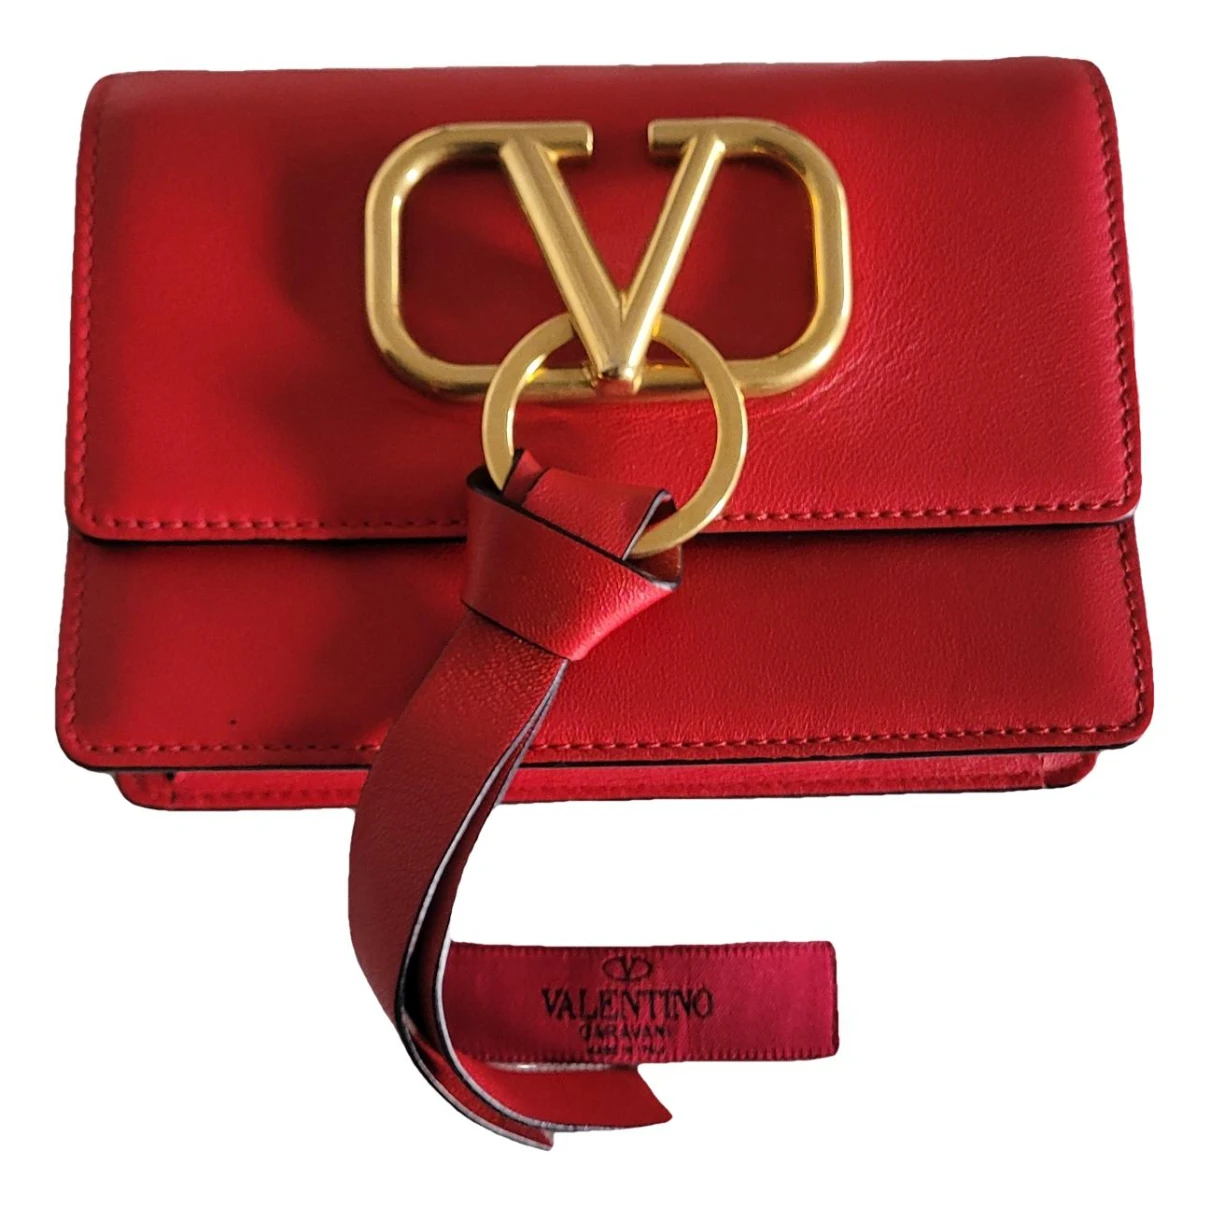 Pre-owned Valentino Garavani Vsling Leather Handbag In Red